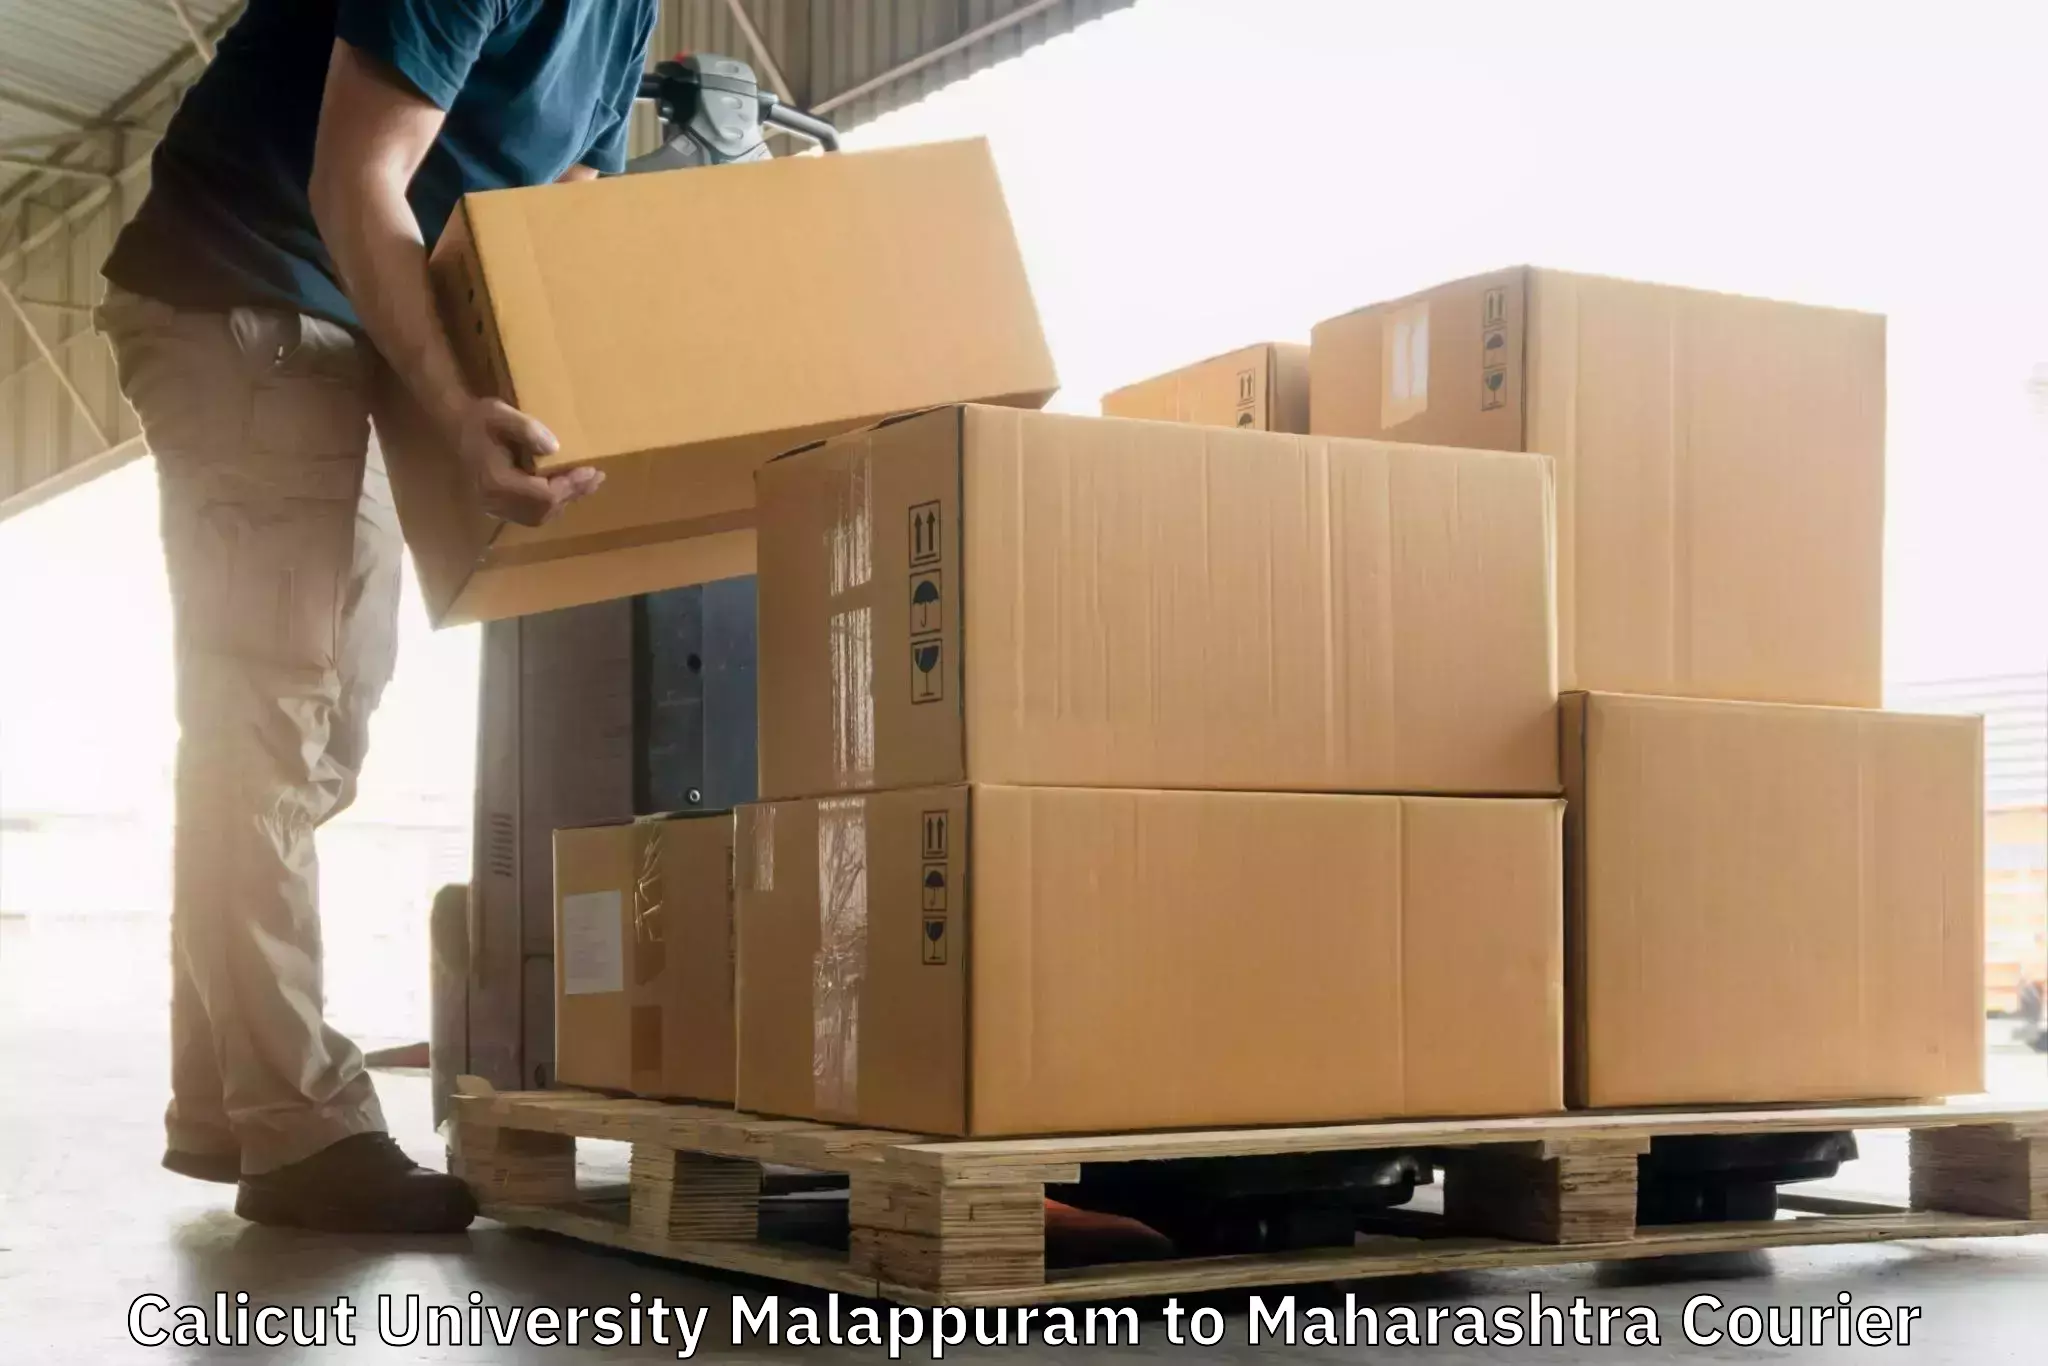 Efficient parcel service Calicut University Malappuram to Panvel